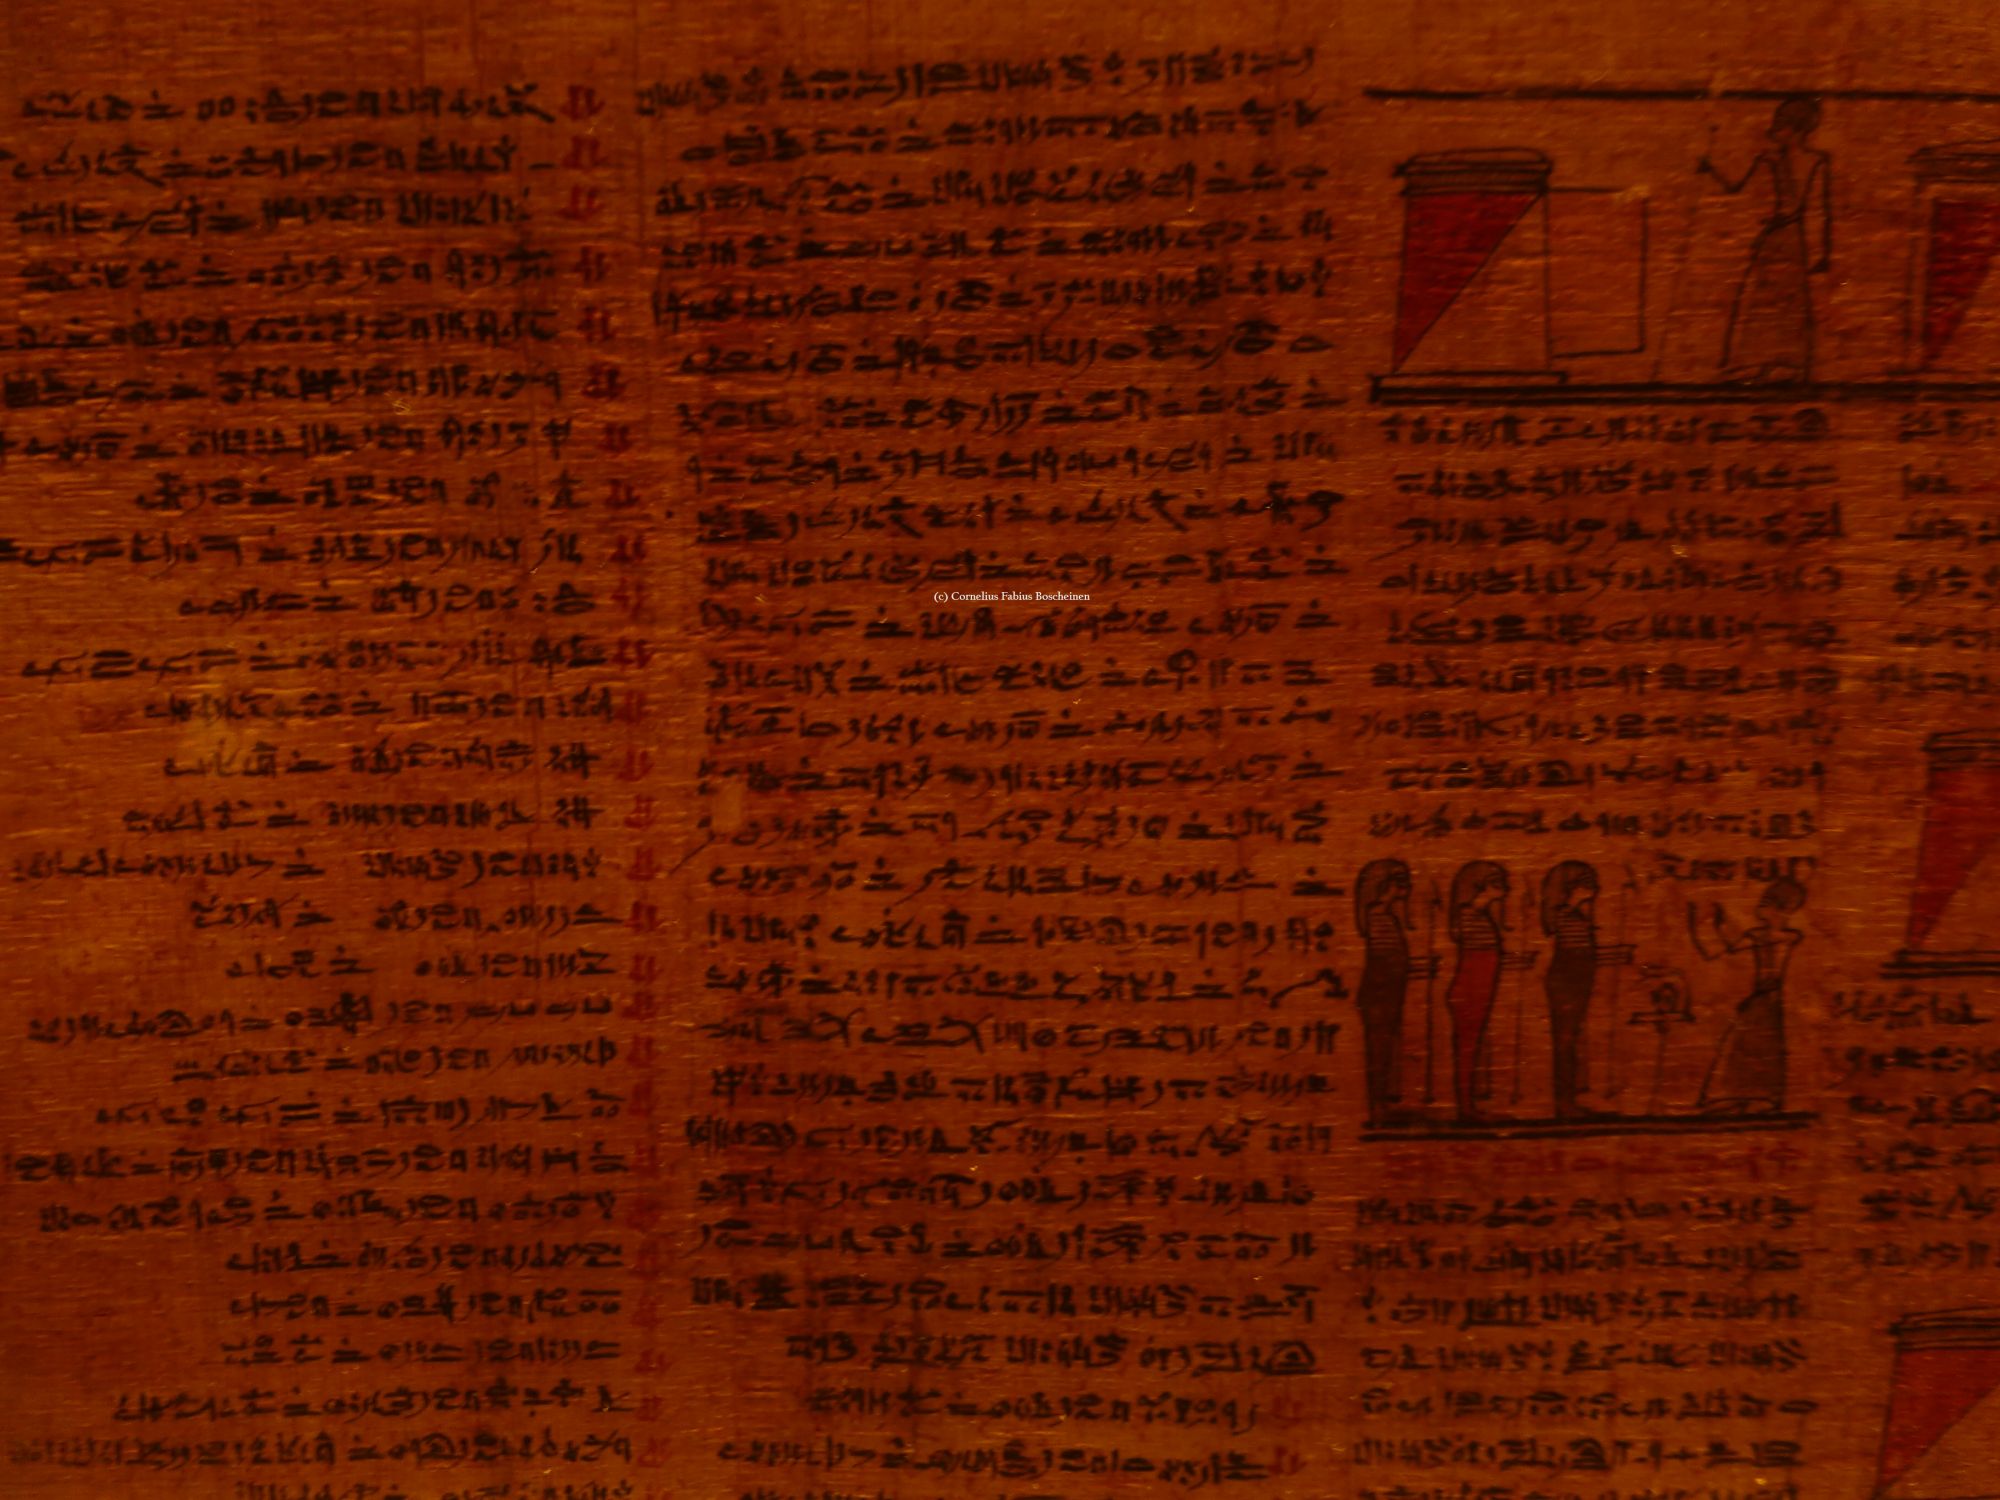 Einblicke in das Totentuch im ägyptischen Museum zu München.